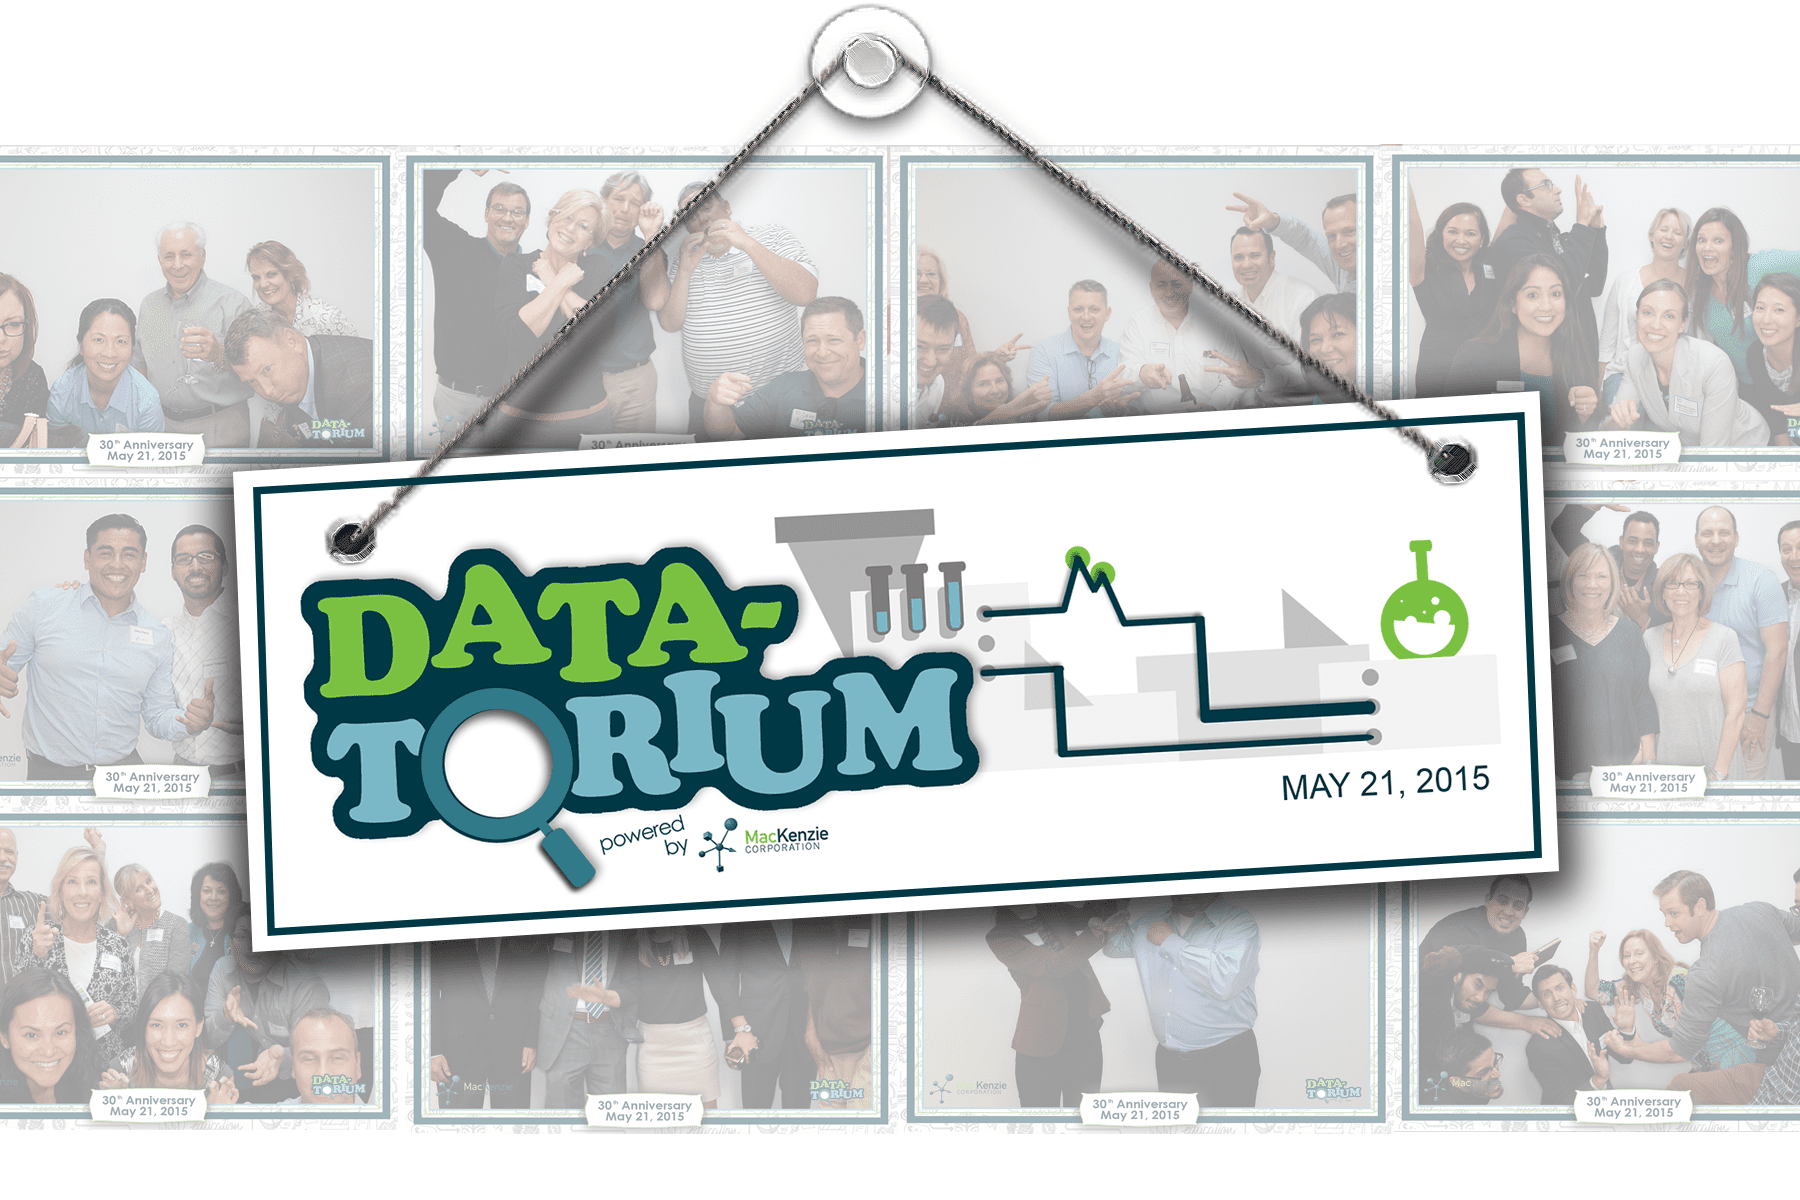 CRM management company_Data-torium-photobooth-recap